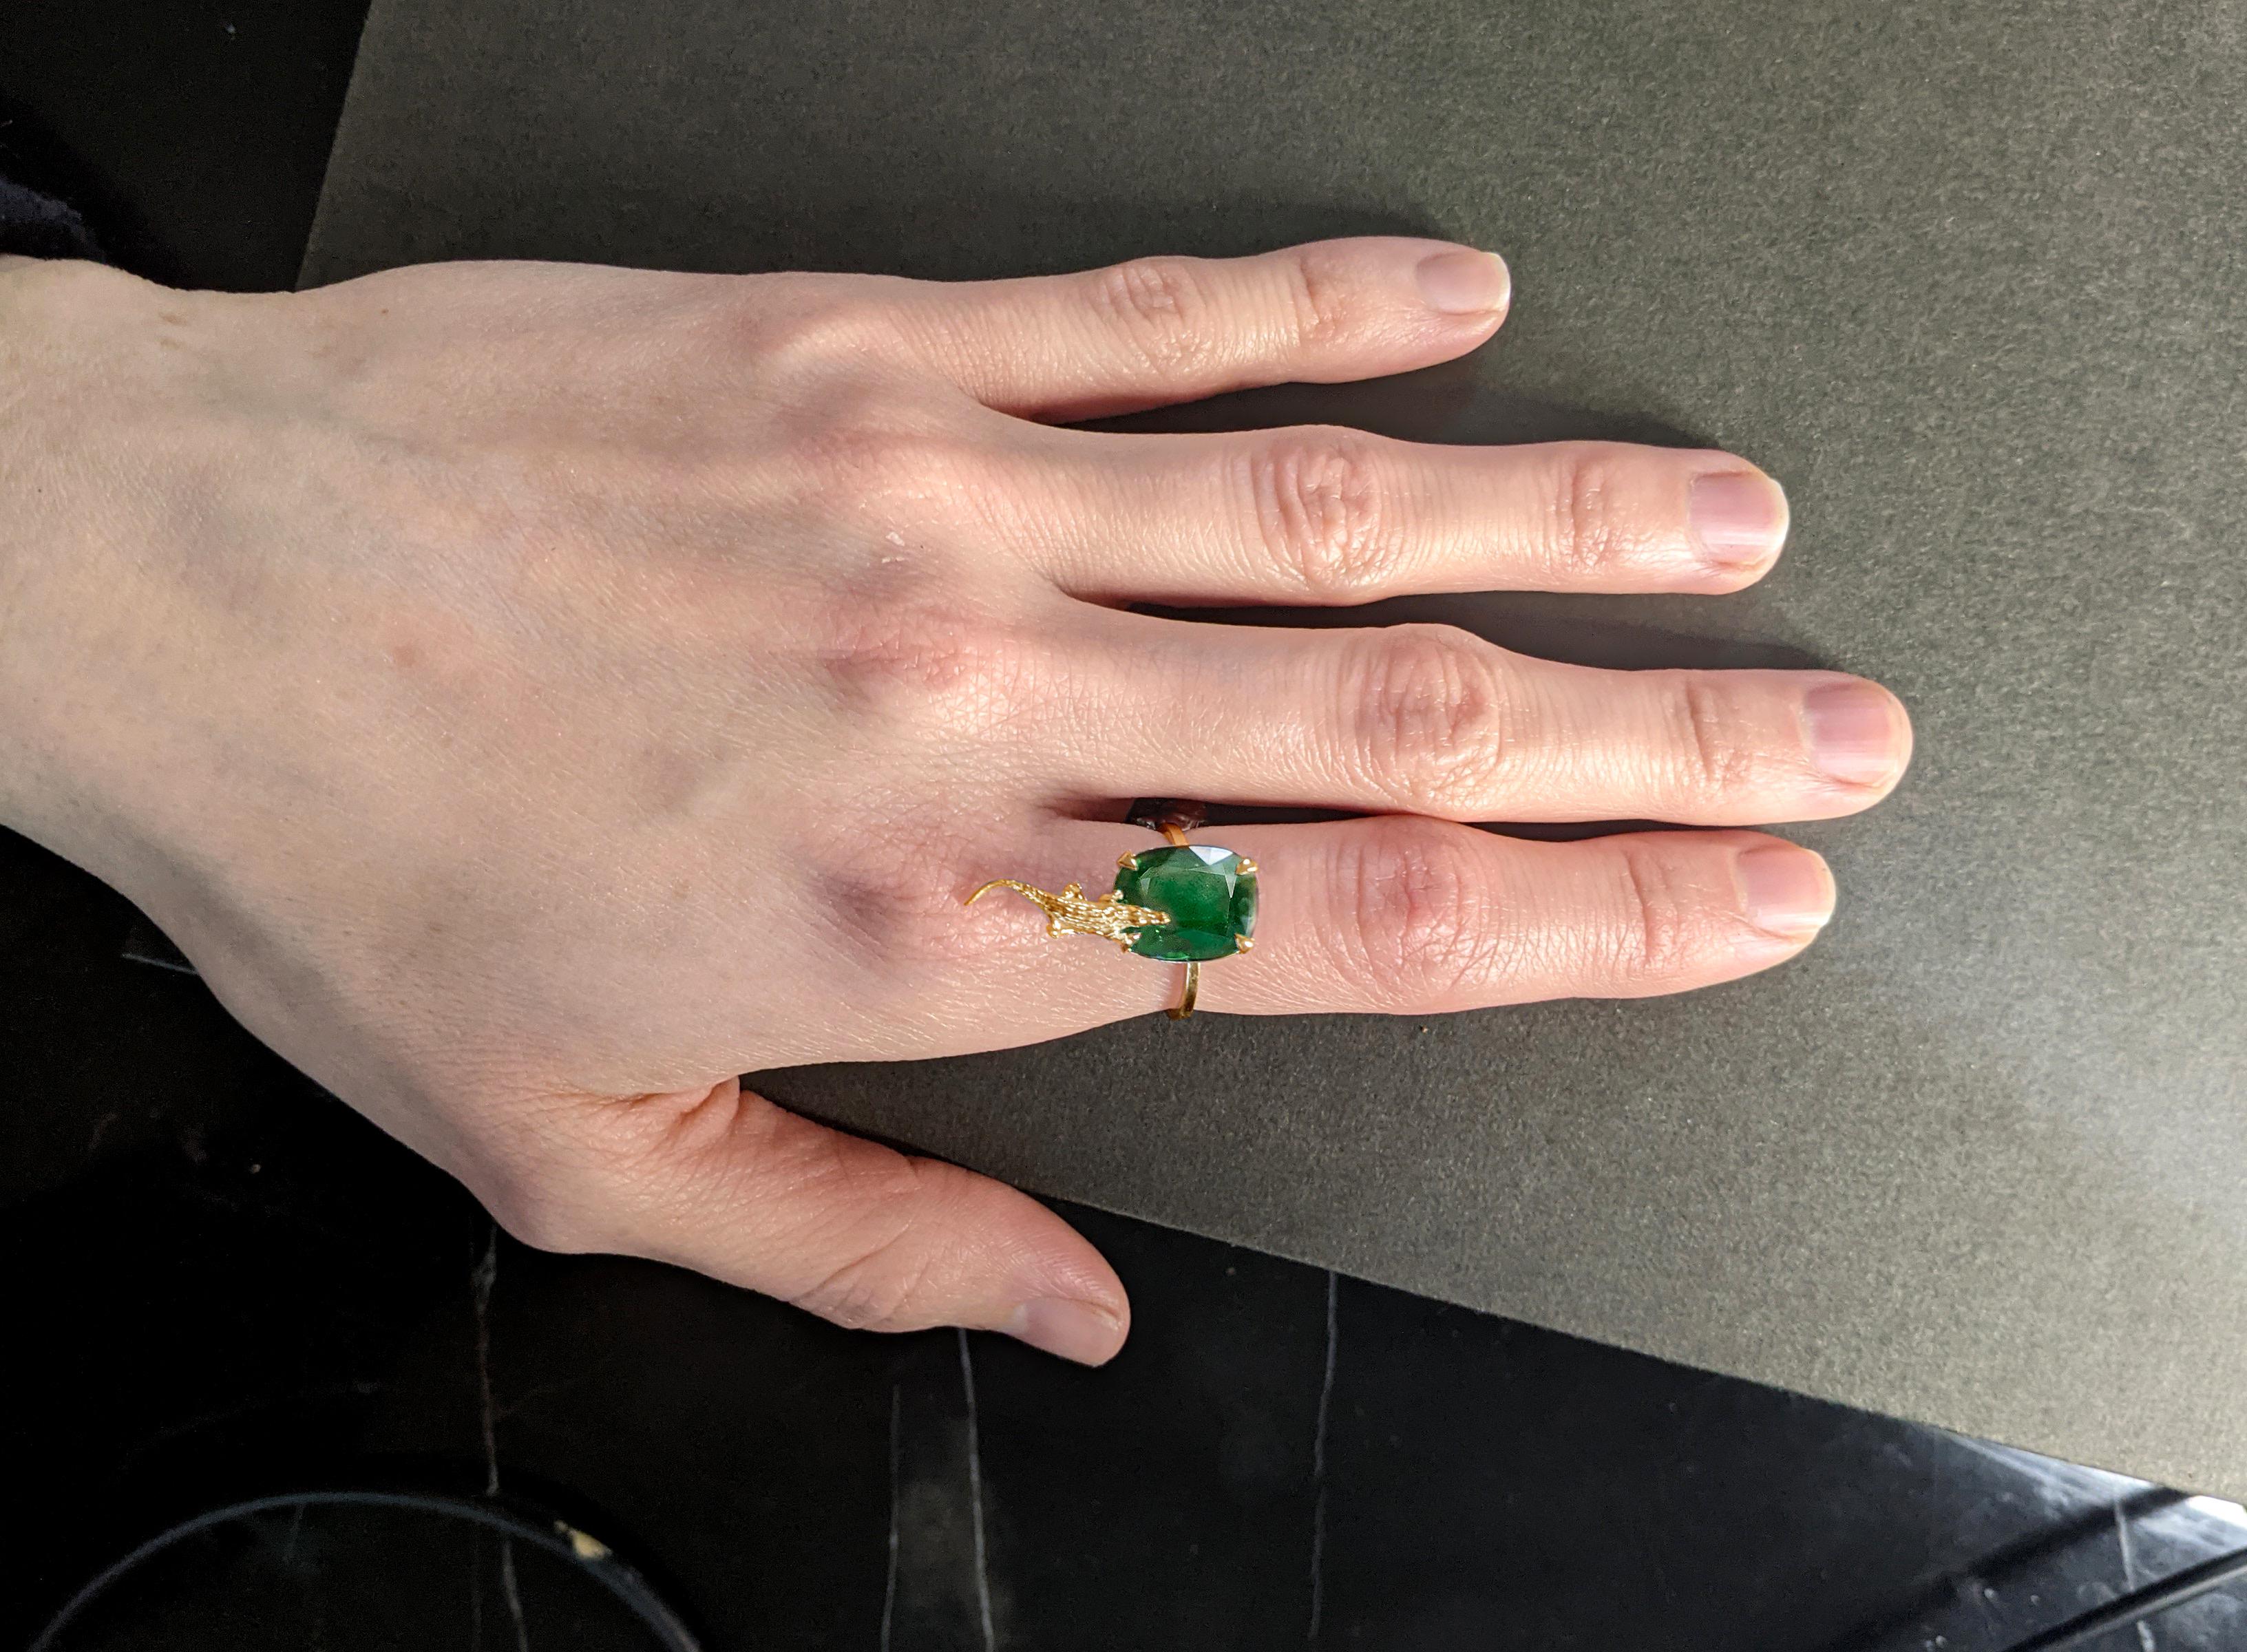 Dieser zeitgenössische mesopotamische Designer-Ring aus 18 Karat Roségold ist mit einem natürlichen Kissen-Smaragd von 2,23 Karat (11x8,7 mm) besetzt. 

Sie können dieses Stück in Weiß-, Rosé- oder Gelbgold, mit Spinell, Saphir, Smaragd, Turmalin